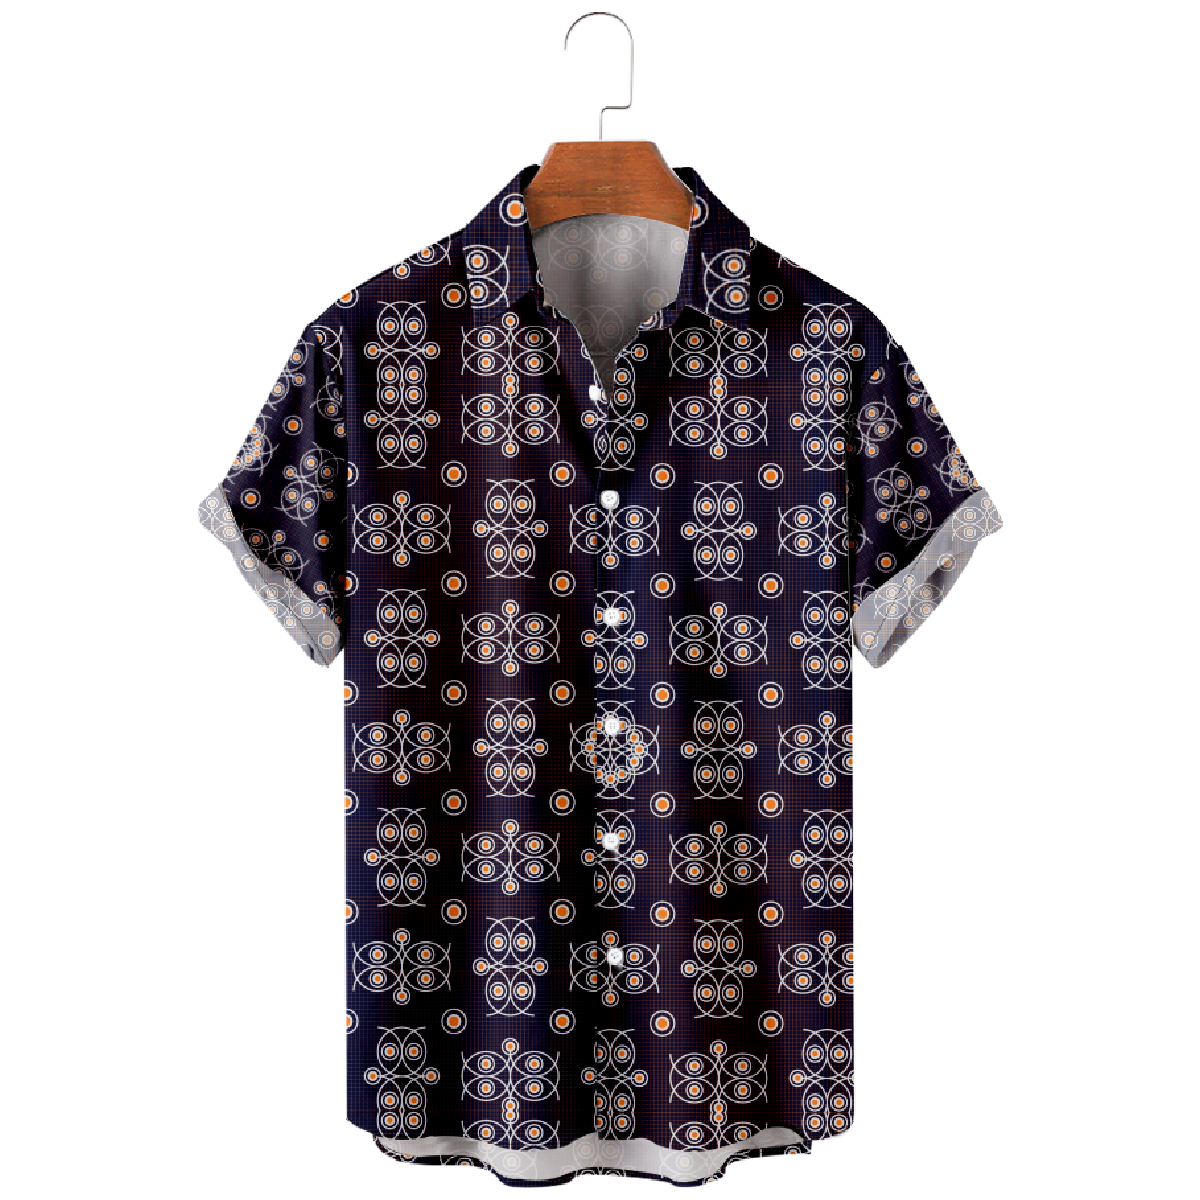 Owl Pattern Print Button Up Shirt Men's Owl Hawaiian Shirt Short Sleeve 